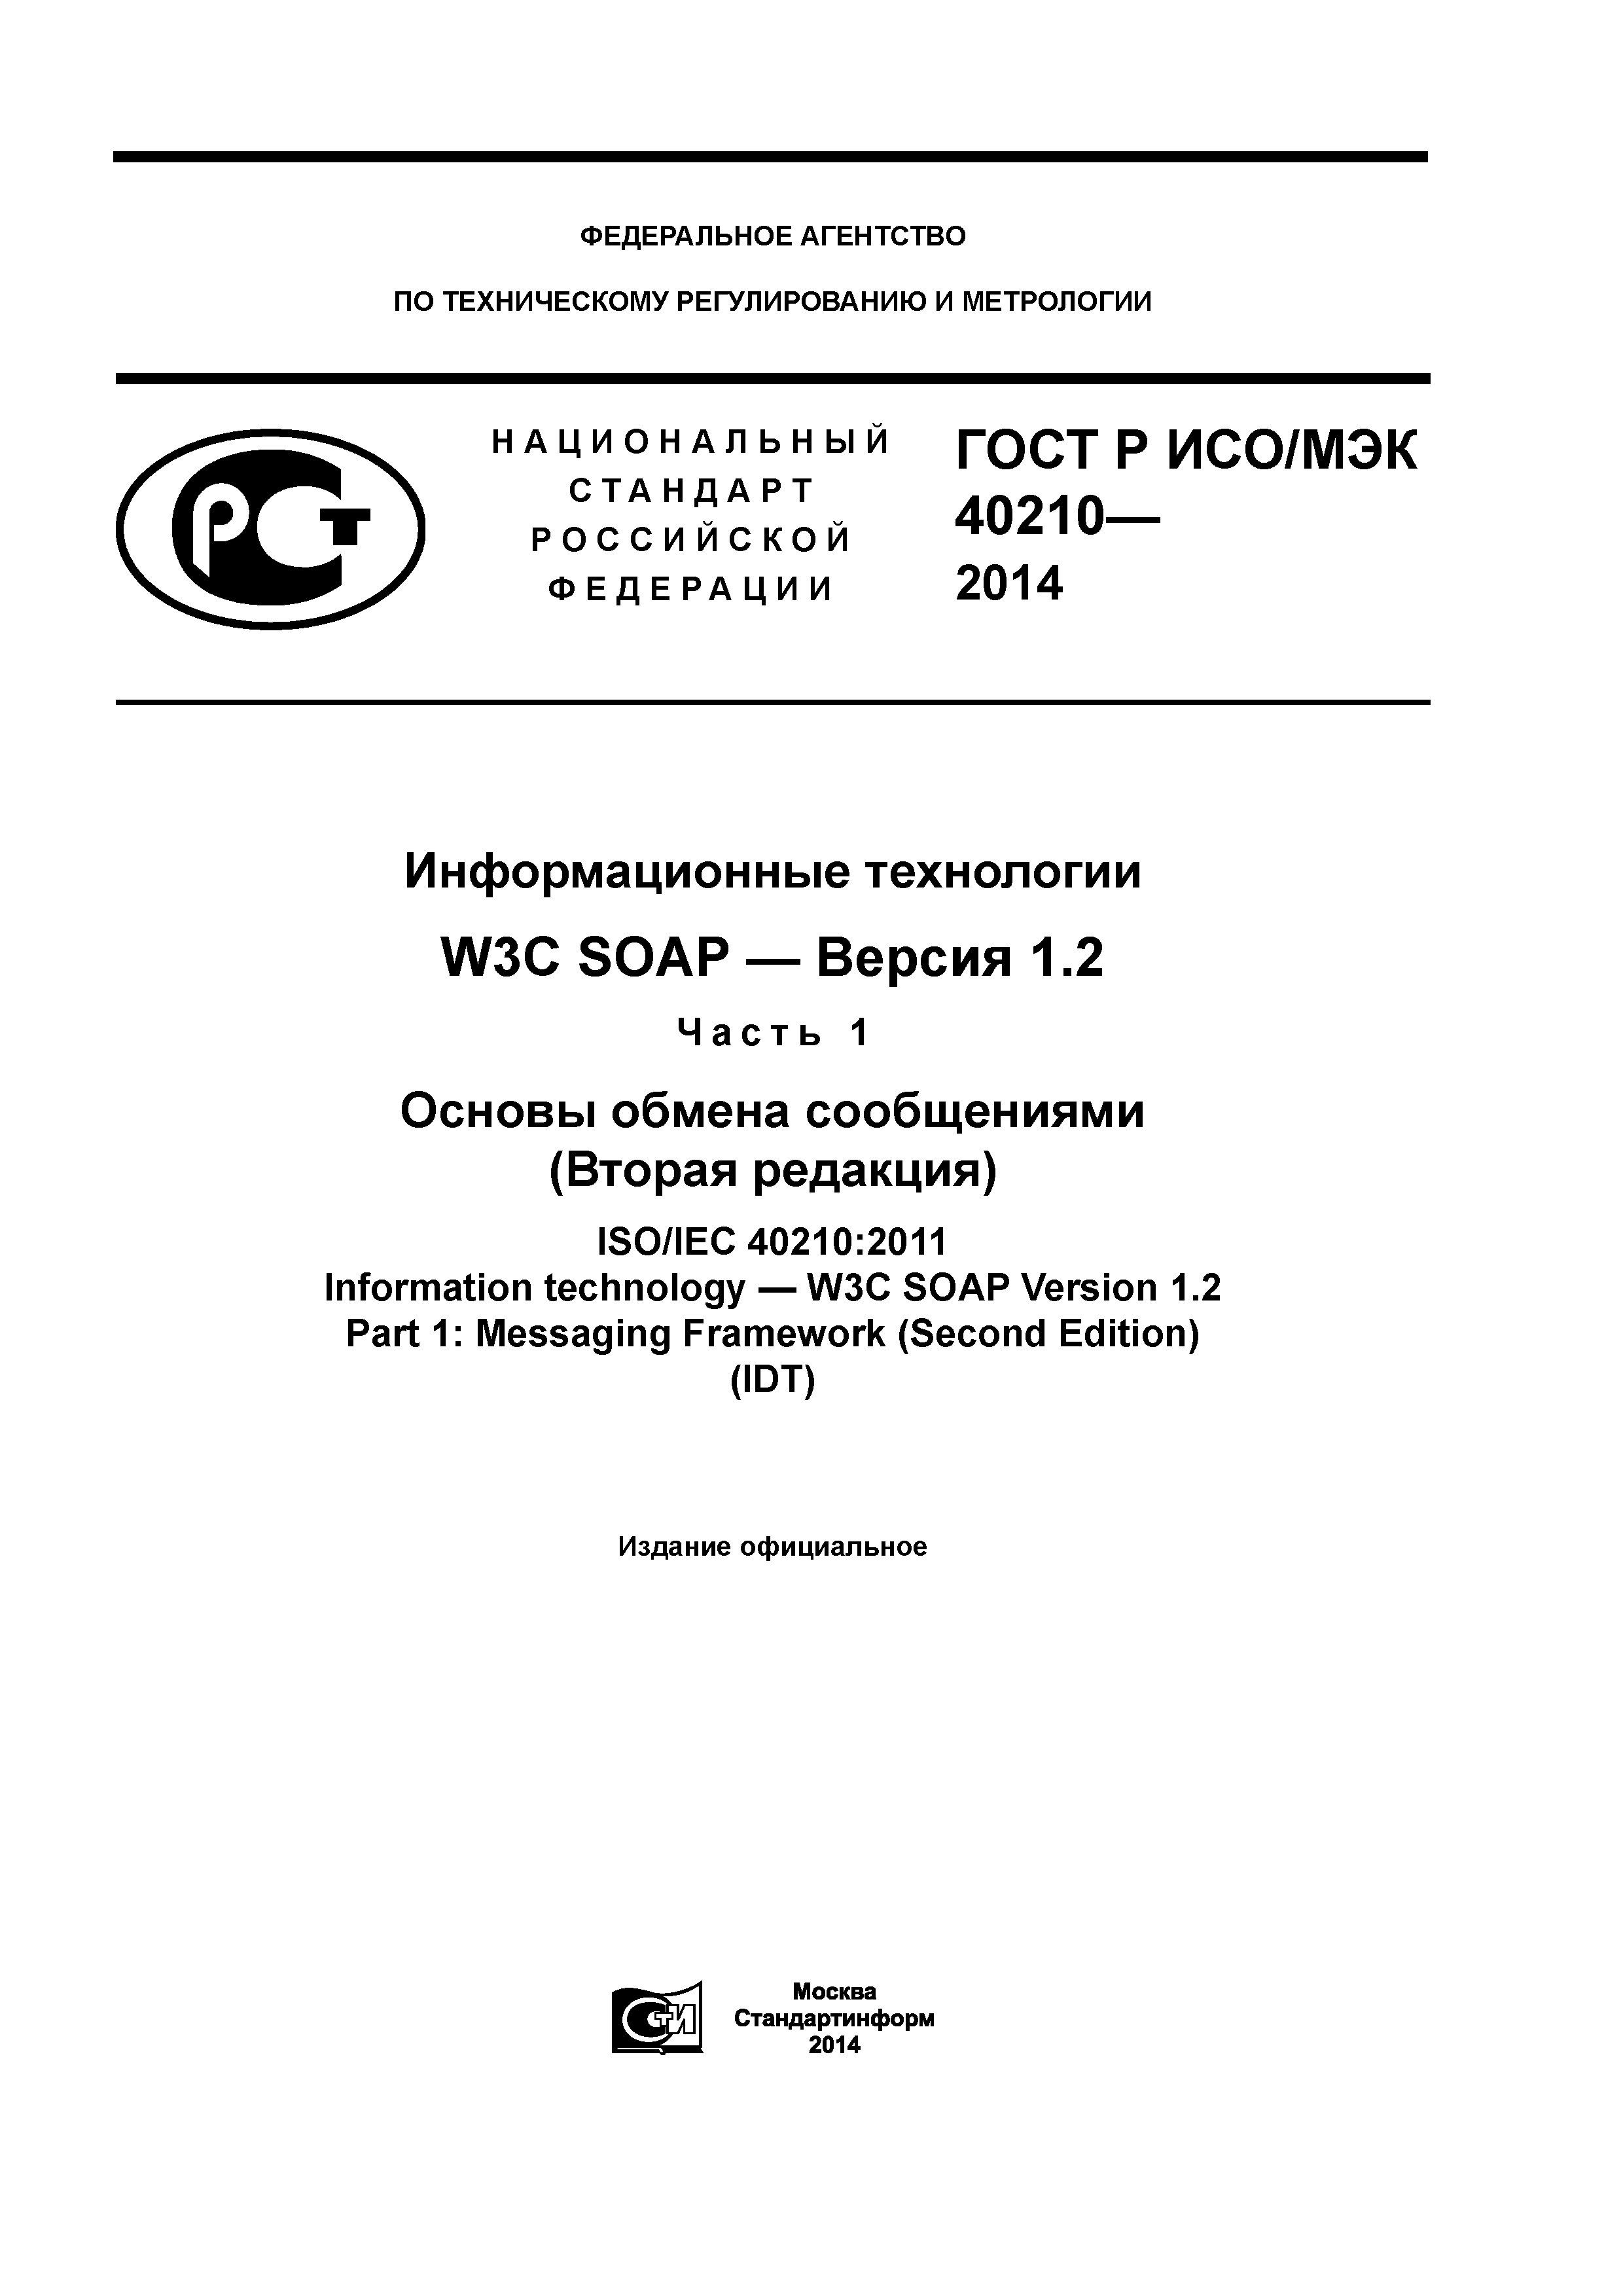 ГОСТ Р ИСО/МЭК 40210-2014